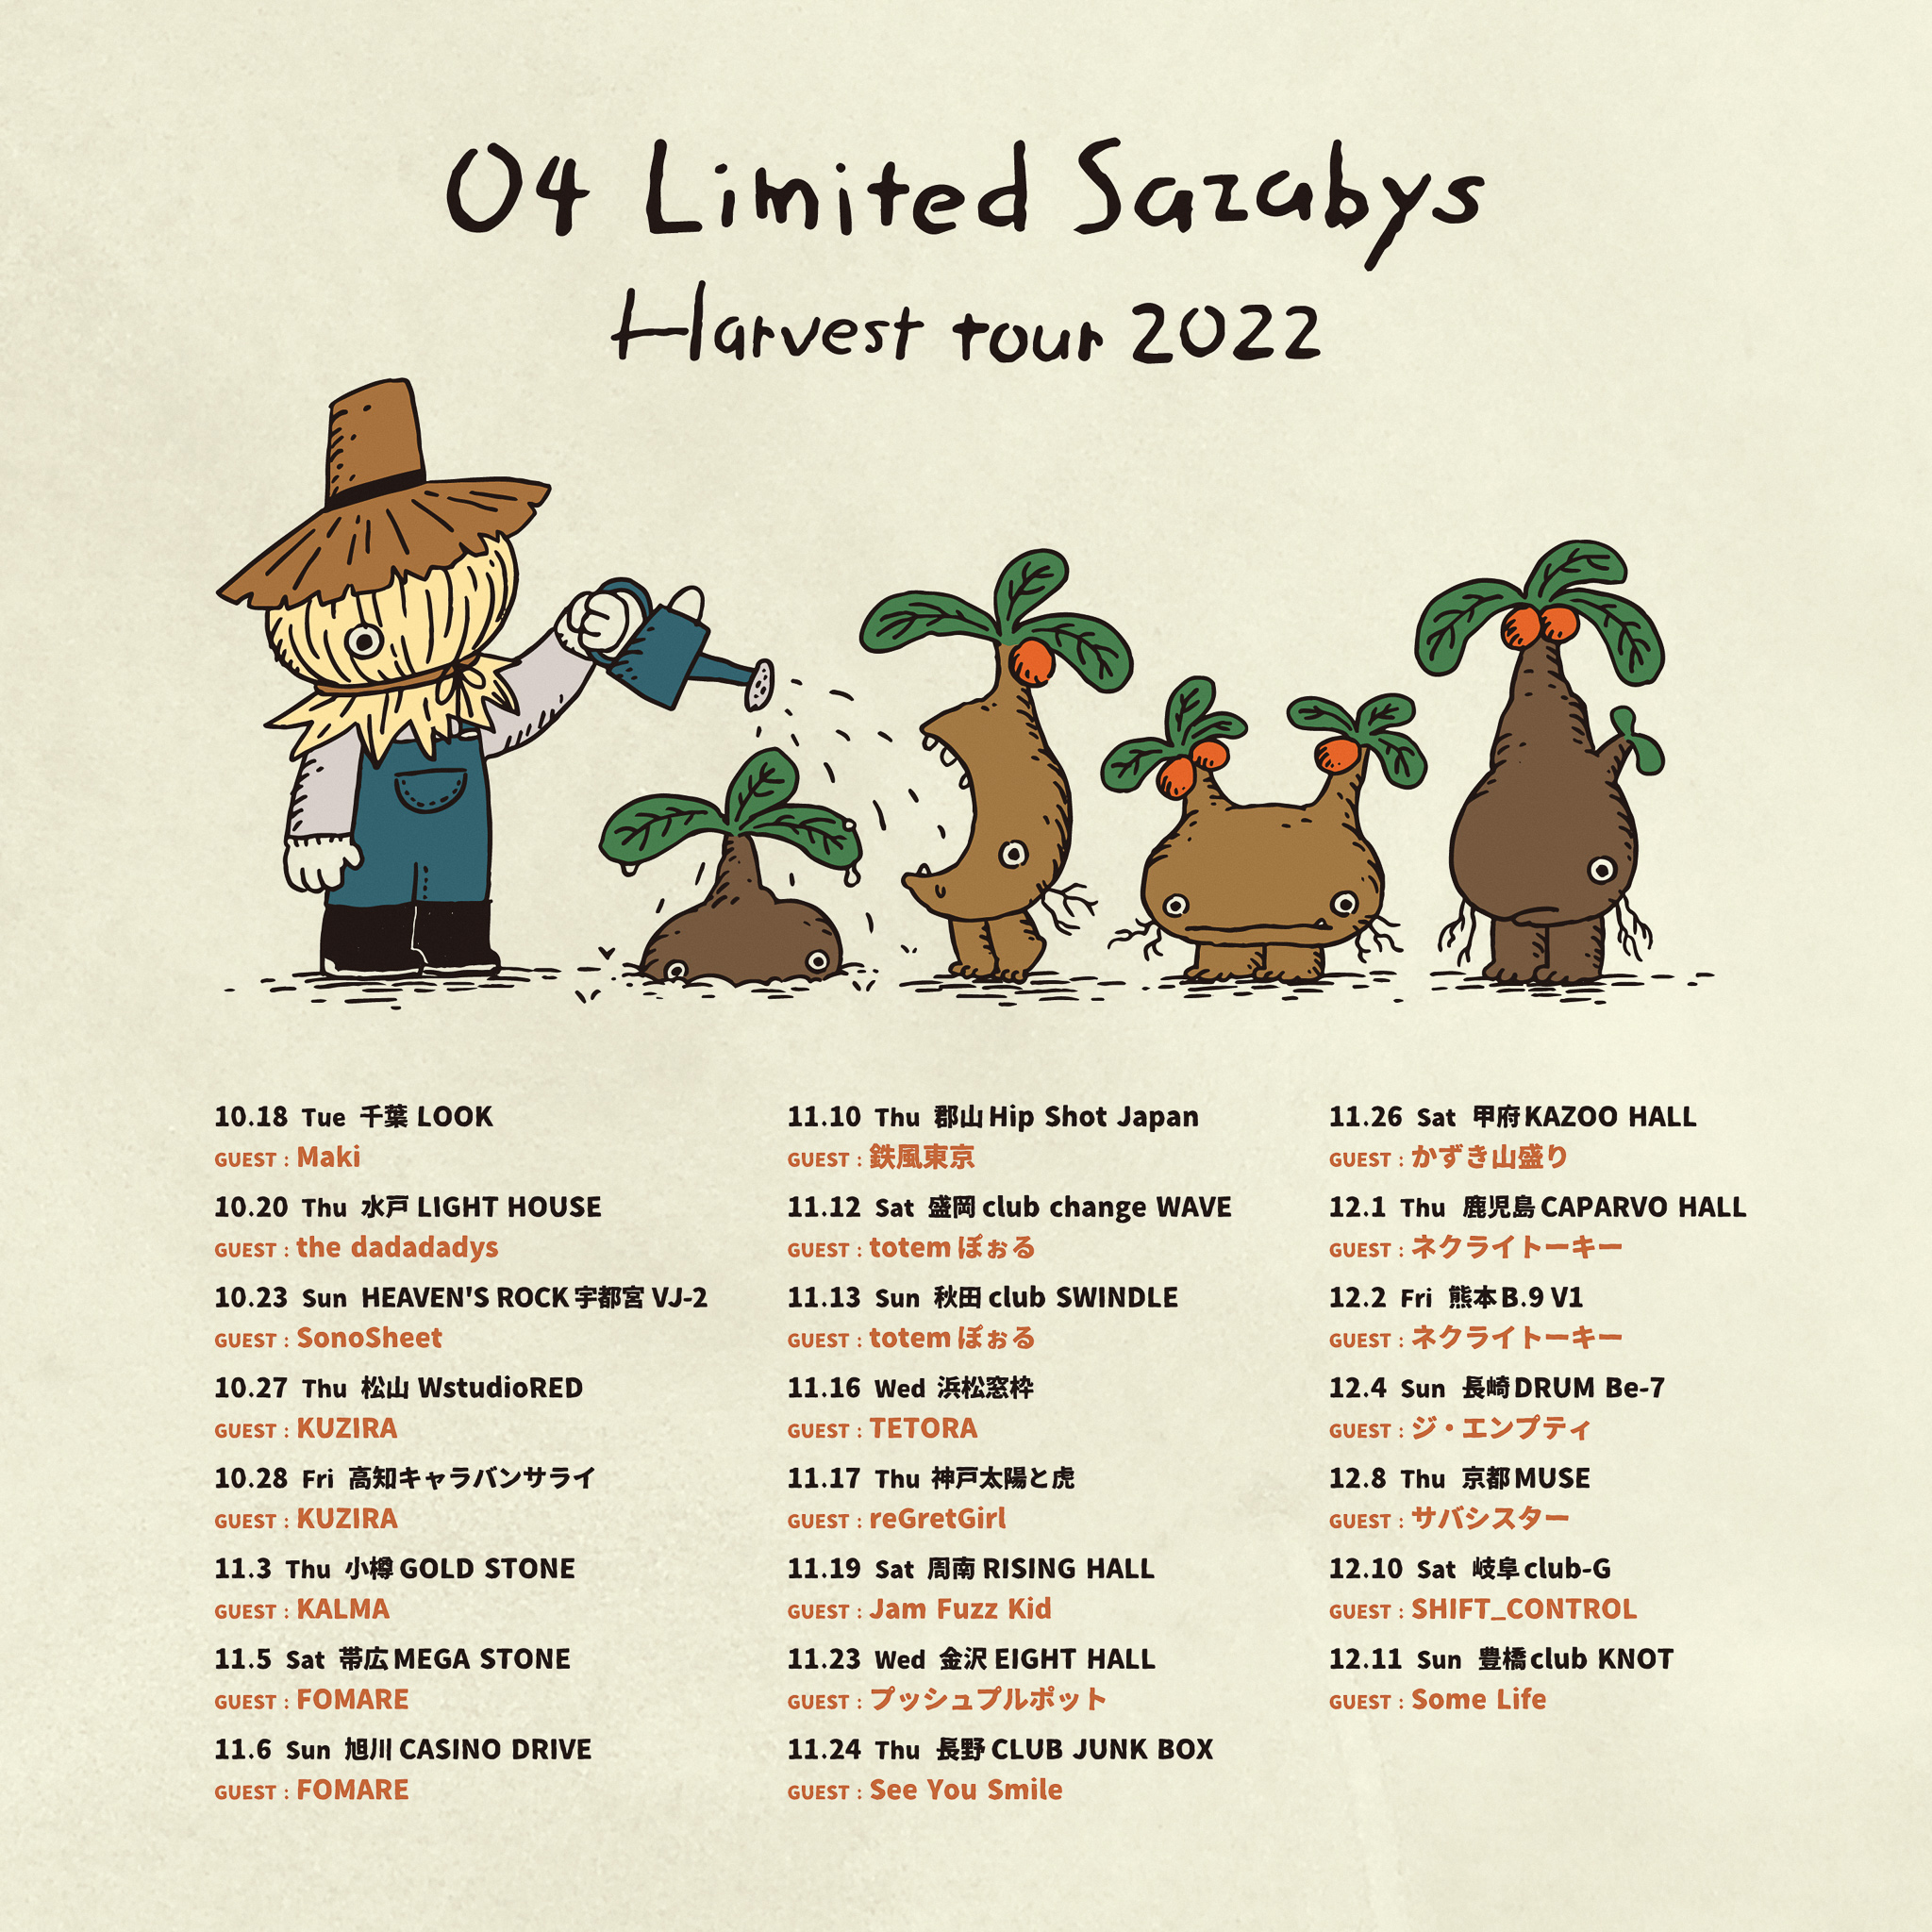 【千葉】04 Limited Sazabys "Harvest tour 2022" (千葉LOOK)